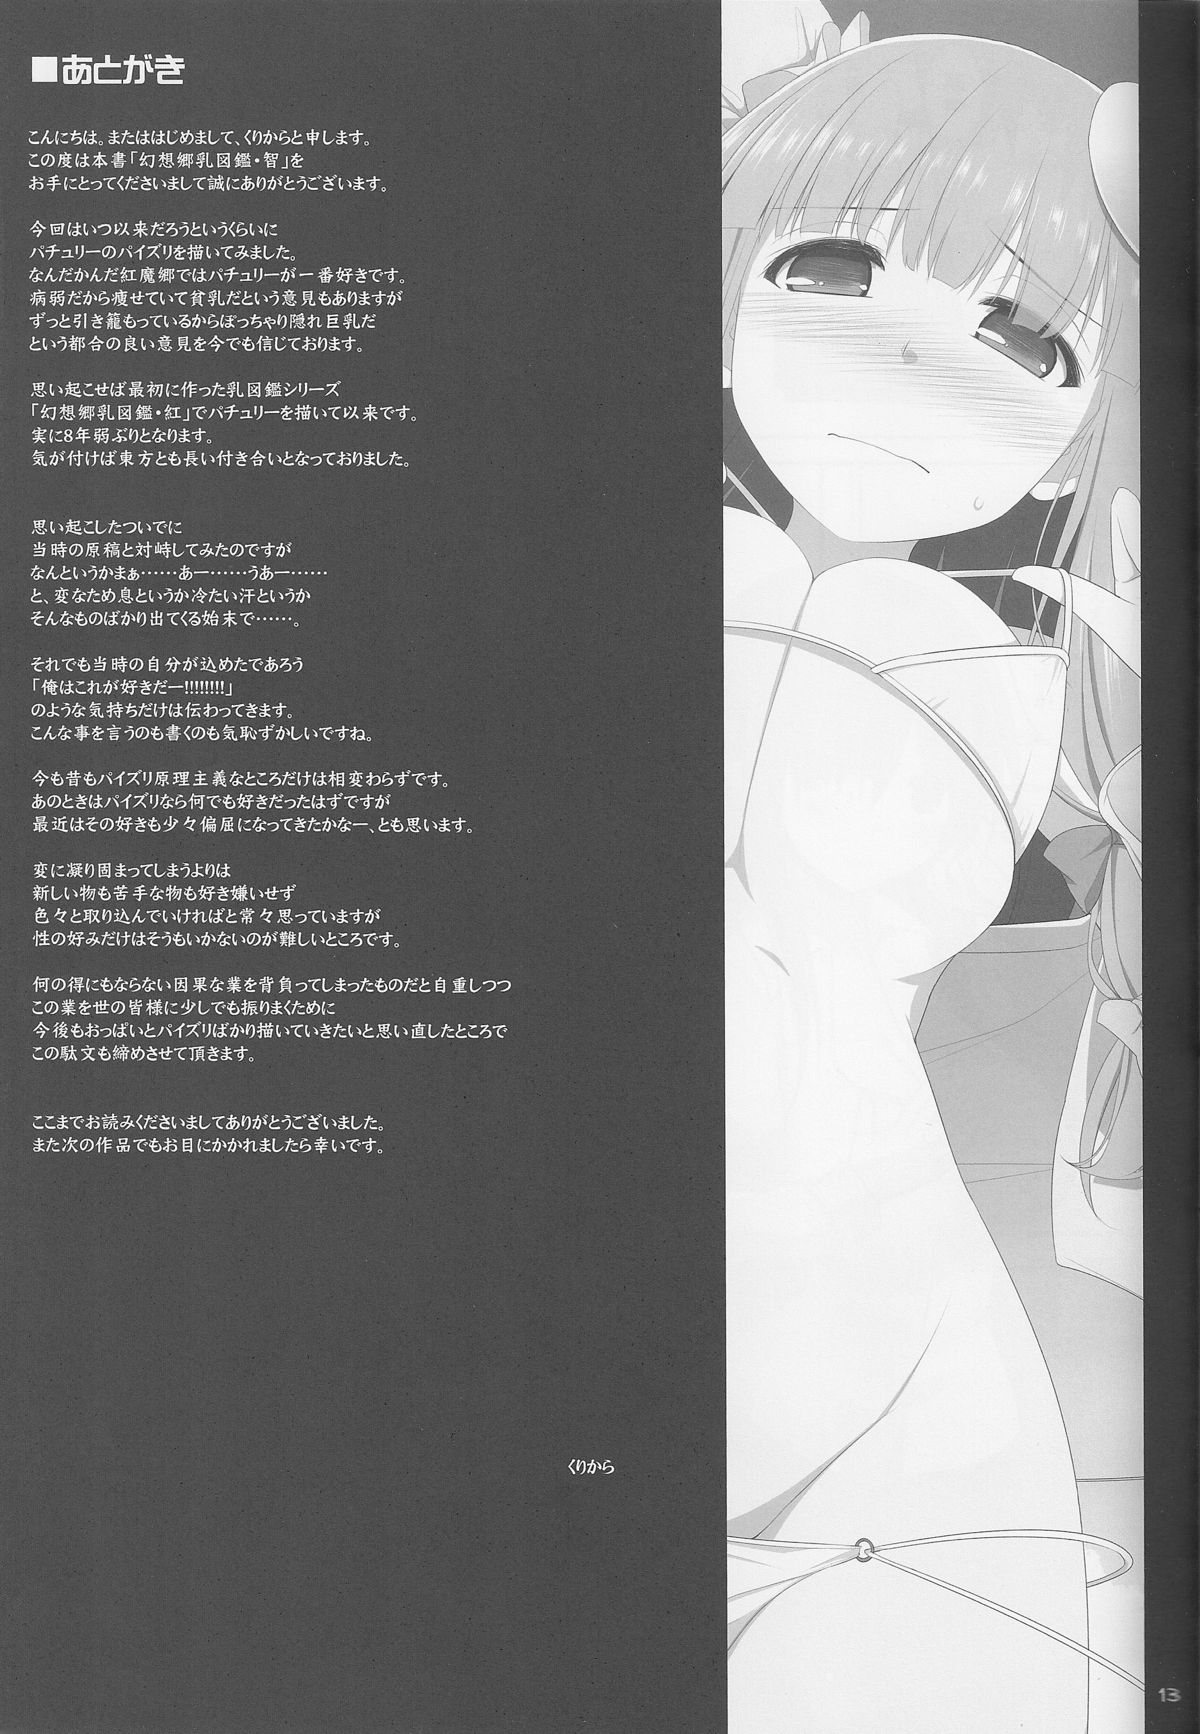 (Reitaisai 11) [TOYBOX, Kujira Logic (Kurikara, Kujiran)] Gensoukyou Chichi Zukan - Chi (Touhou Project) page 12 full